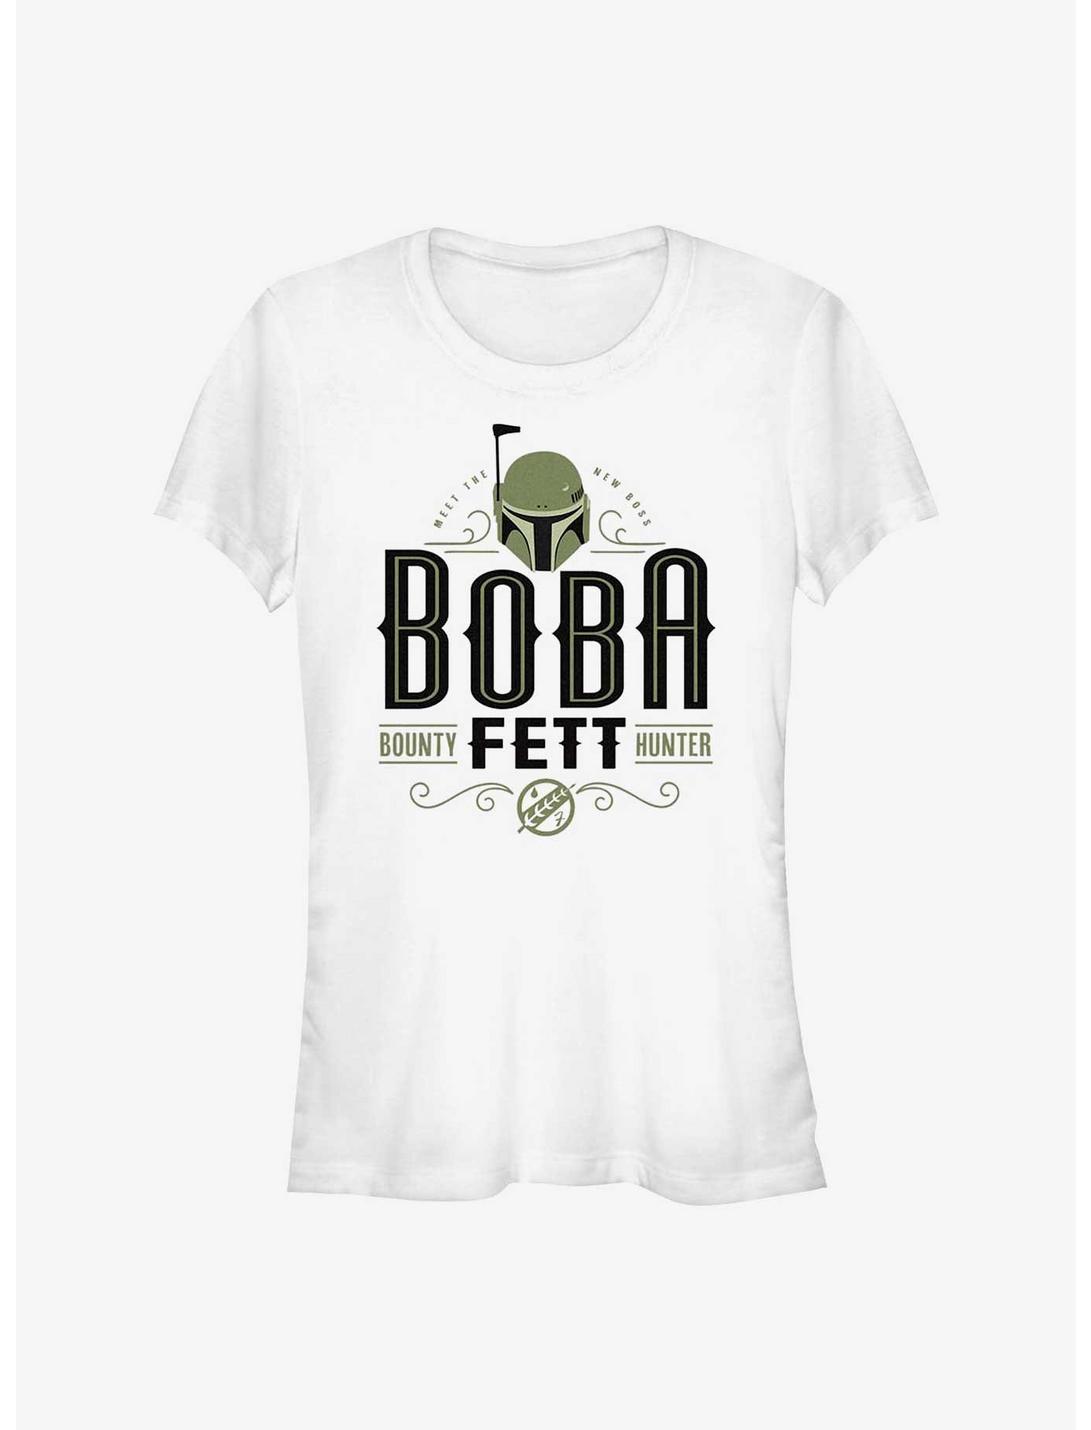 Star Wars The Book Of Boba Fett Boba Fett Bounty Hunter Girls T-Shirt, WHITE, hi-res